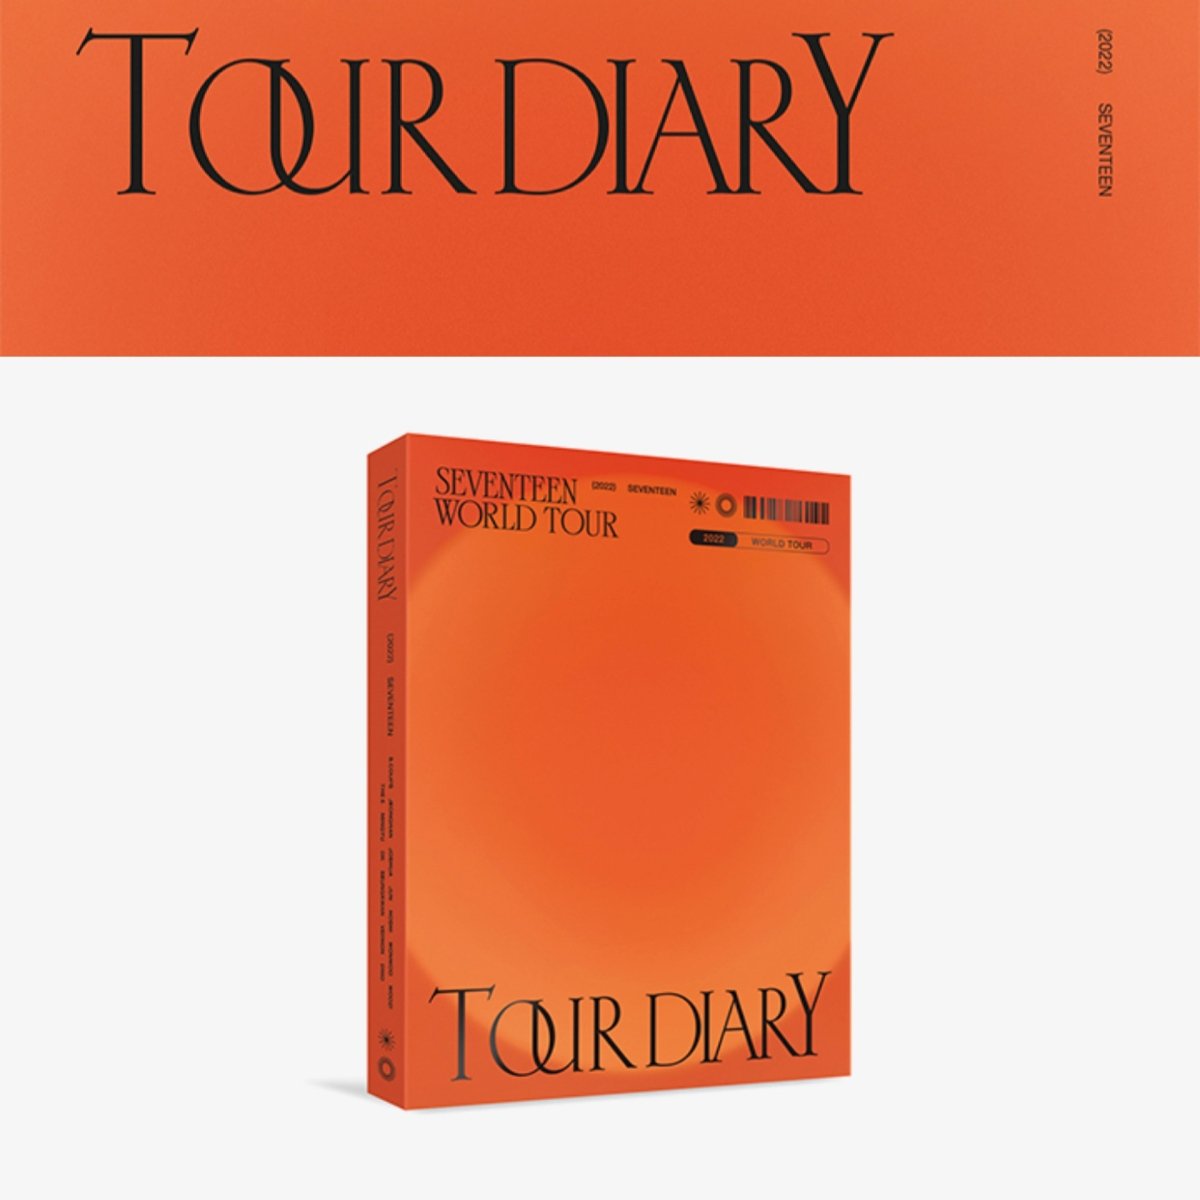 SEVENTEEN - World Tour BE THE SUN SEOUL Tour Diary